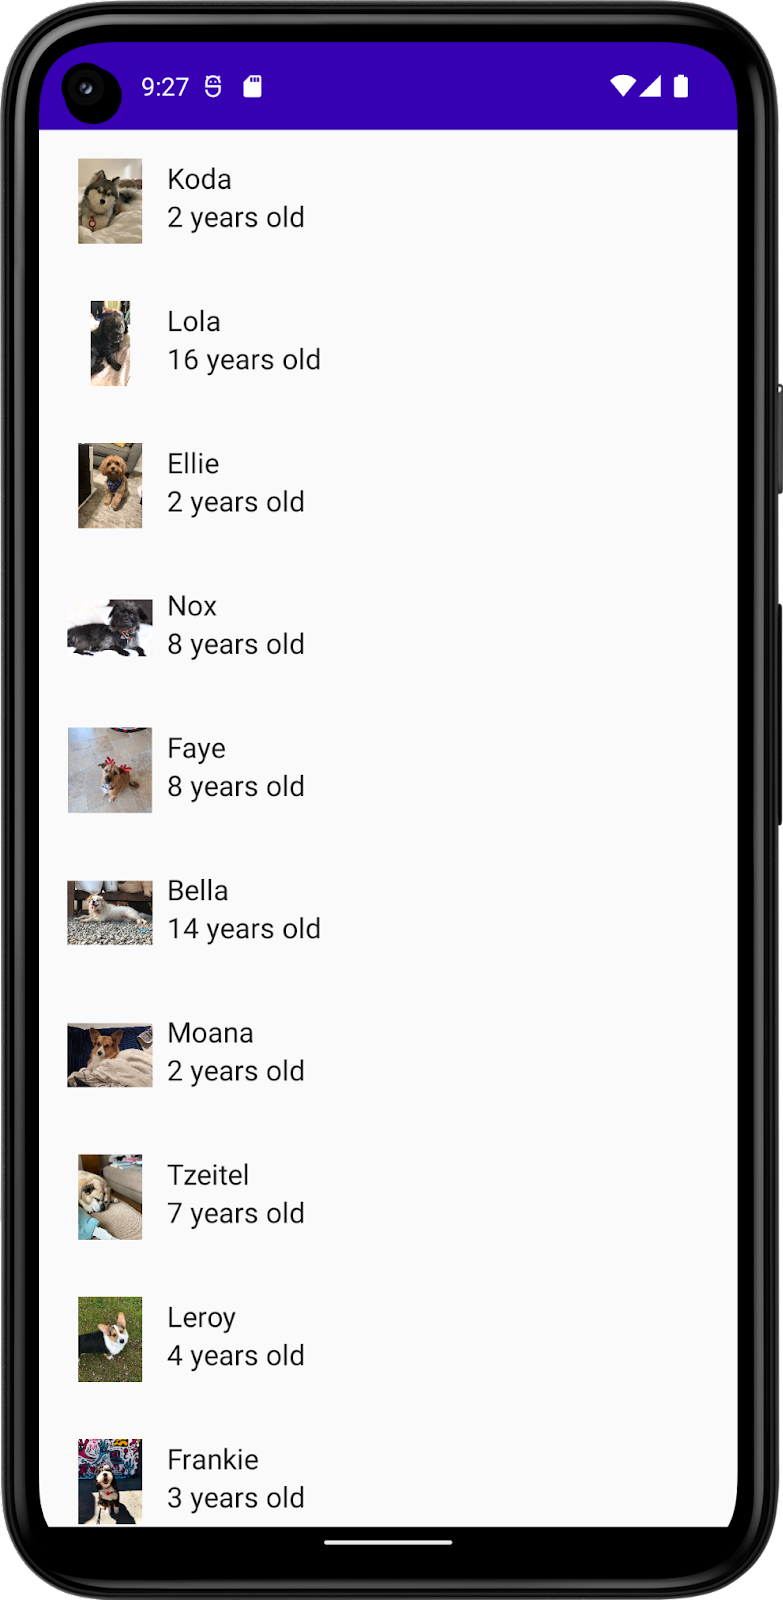 Esta imagem mostra um app com uma lista de cachorros, incluindo nomes, fotos e idades. 